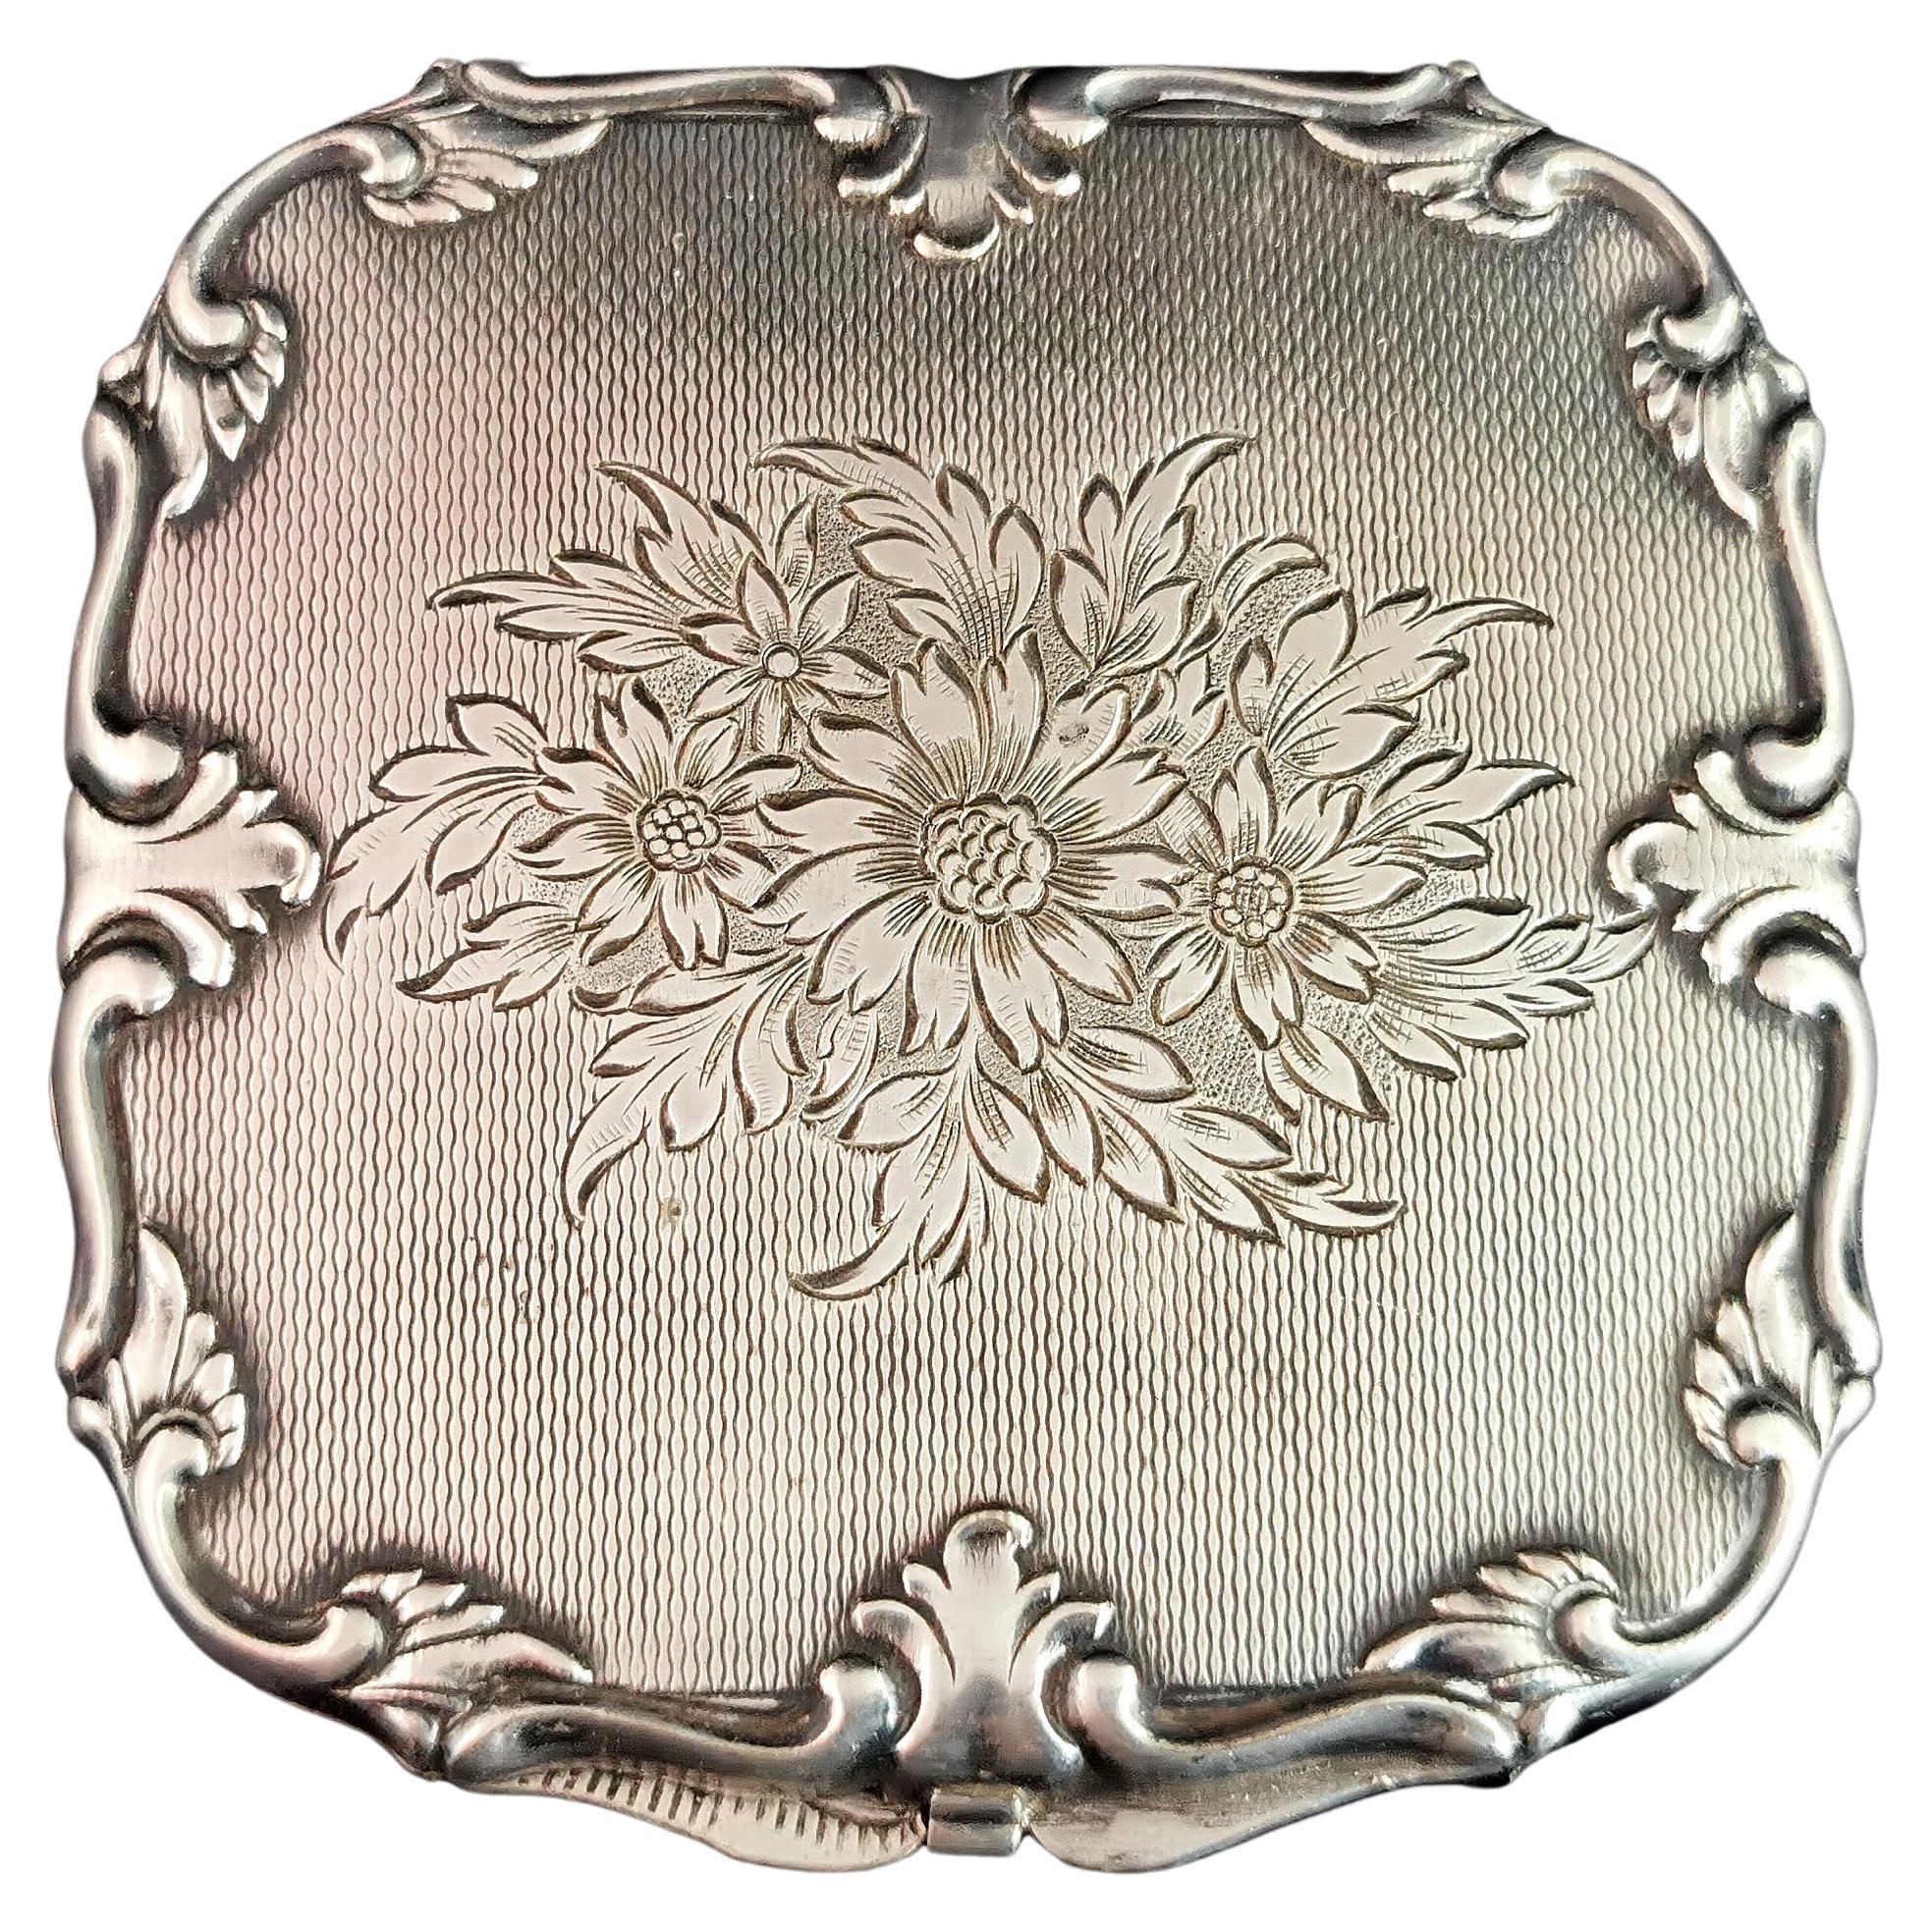 Vintage silver tone compact, mirror, Floral 